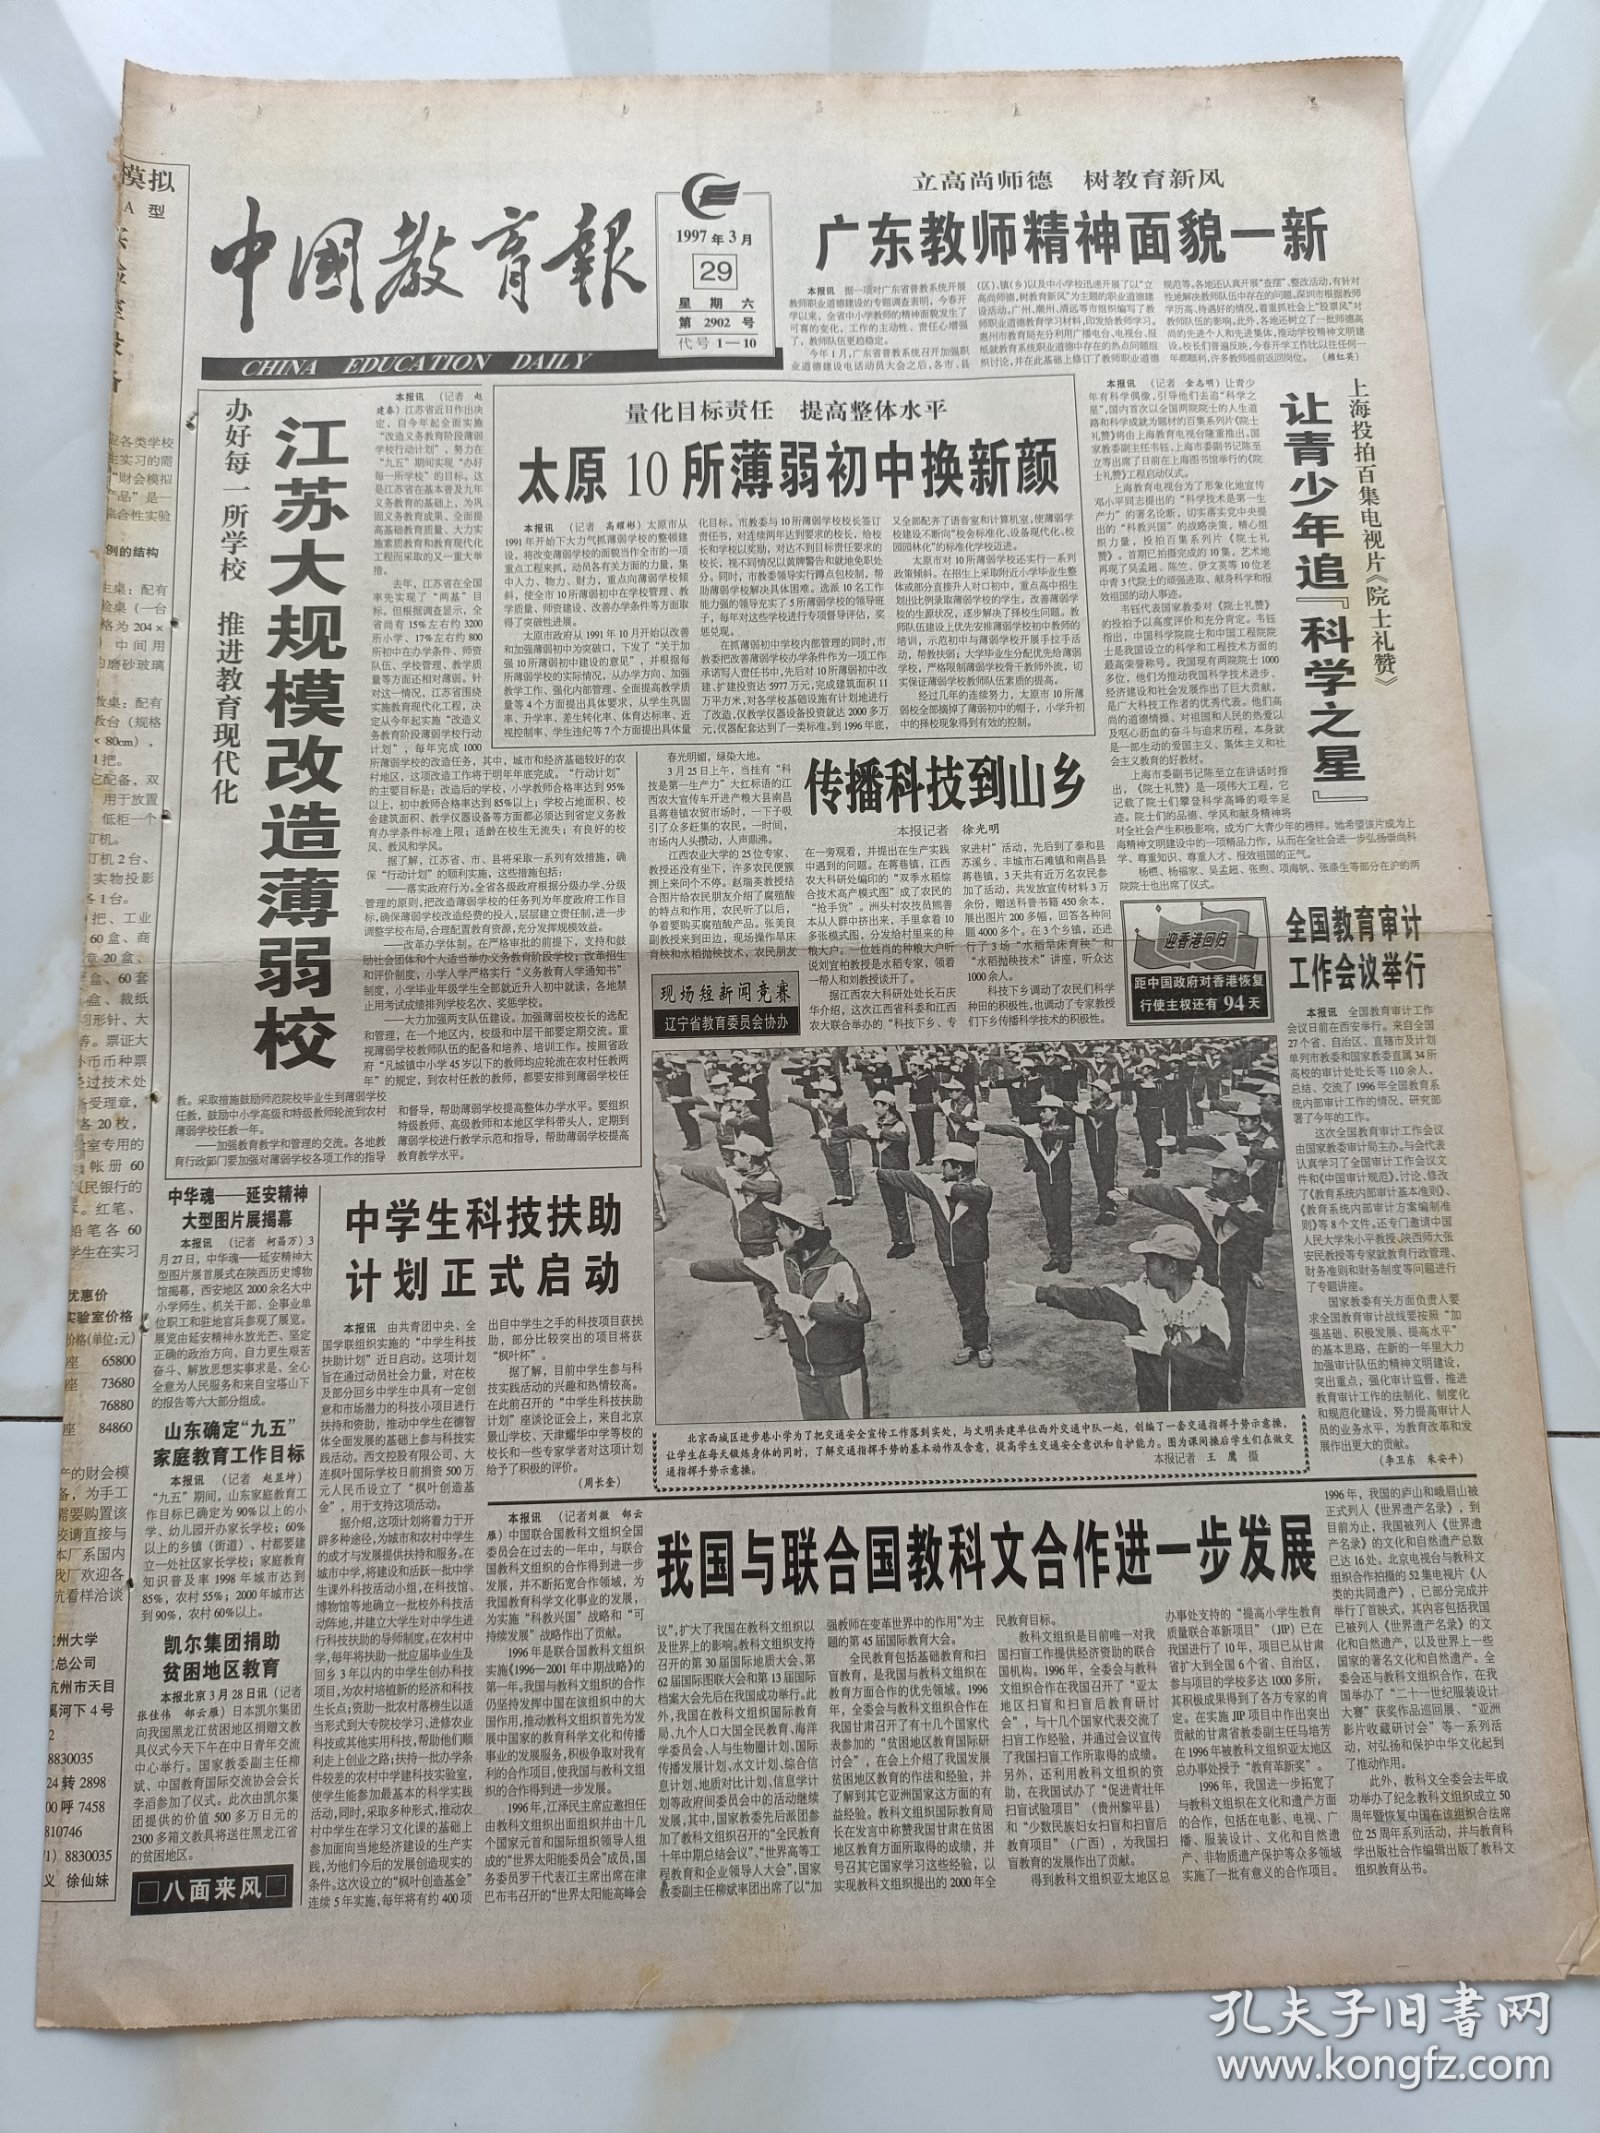 中国教育报1997年3月29日北京西城区进步巷小学为了把交通安全宣传工作落到实处，与文明共建单位西交通中队一起创编了一套交通指挥手示一操。